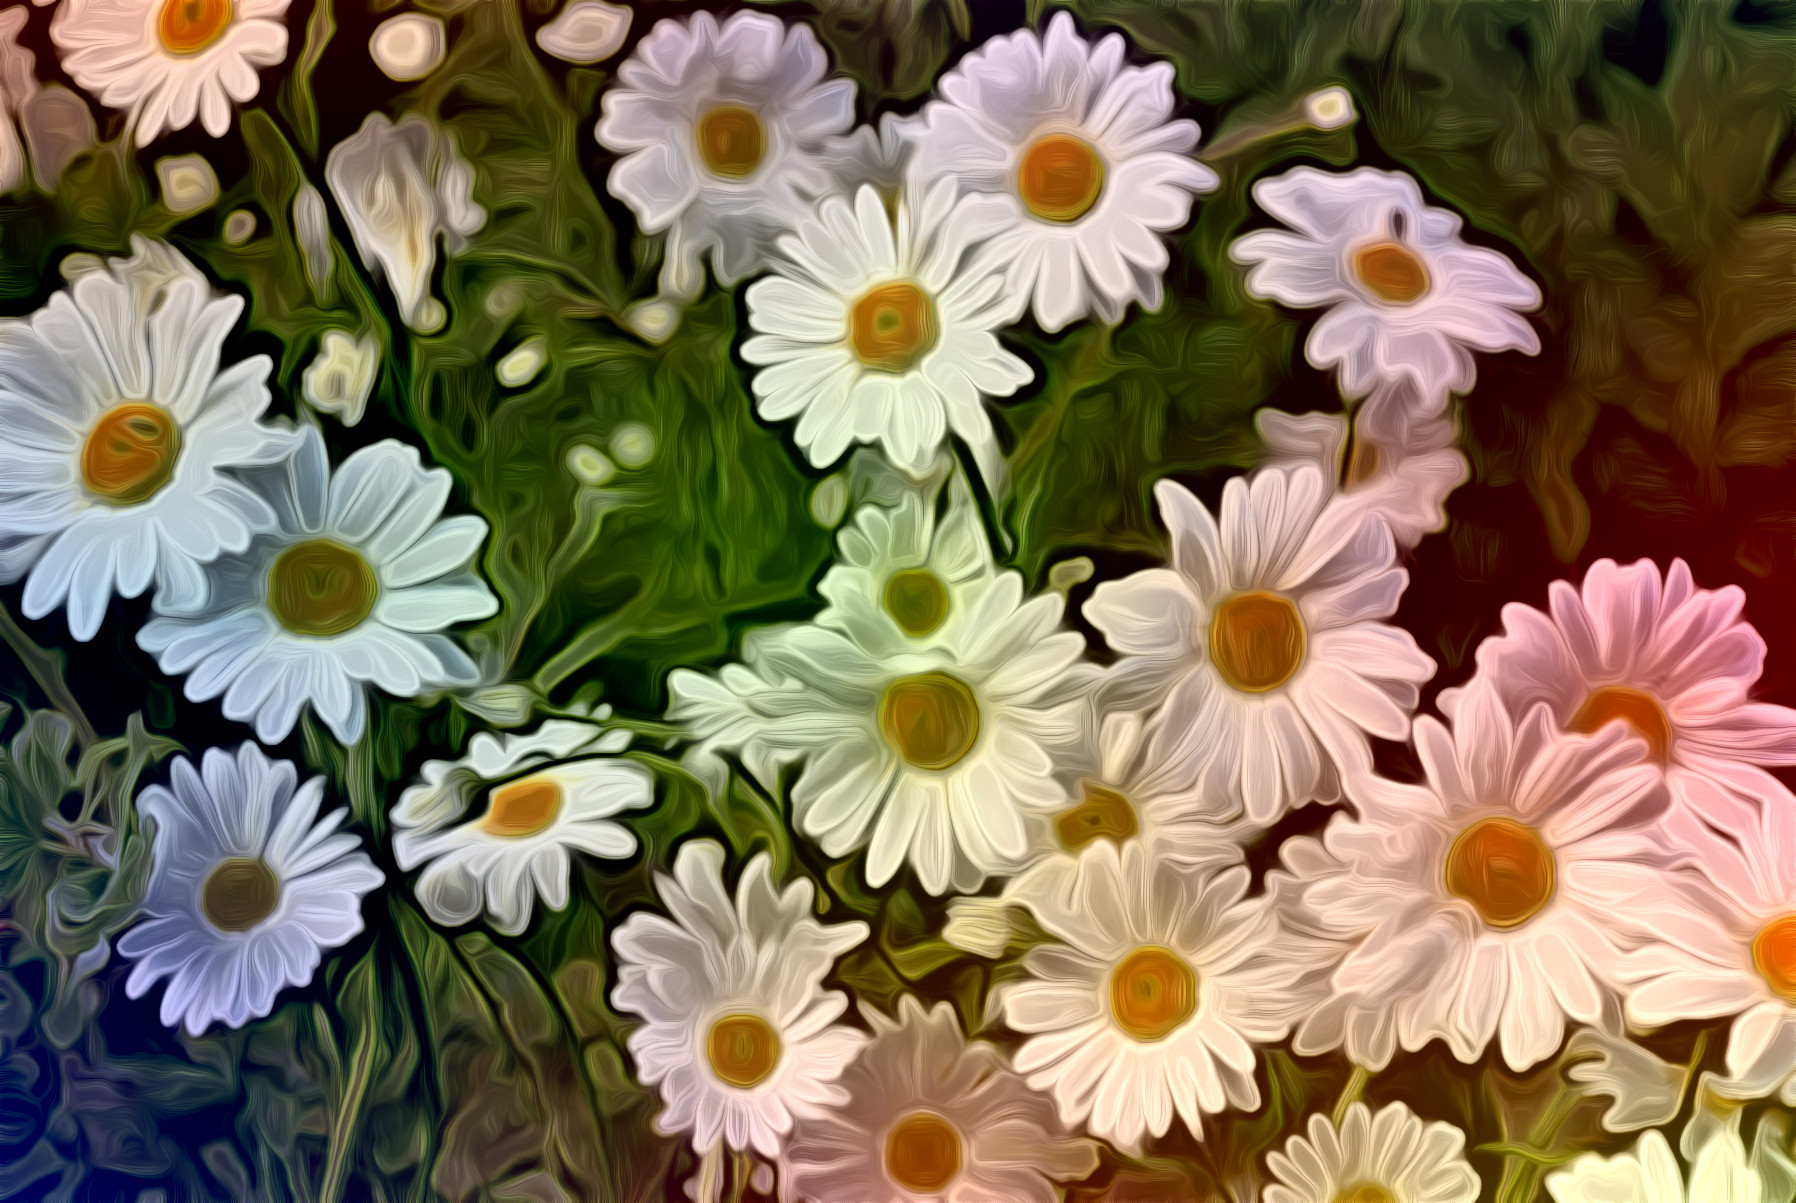 daisy-flower-spring-marguerite-JvidEffect_A2.jpeg